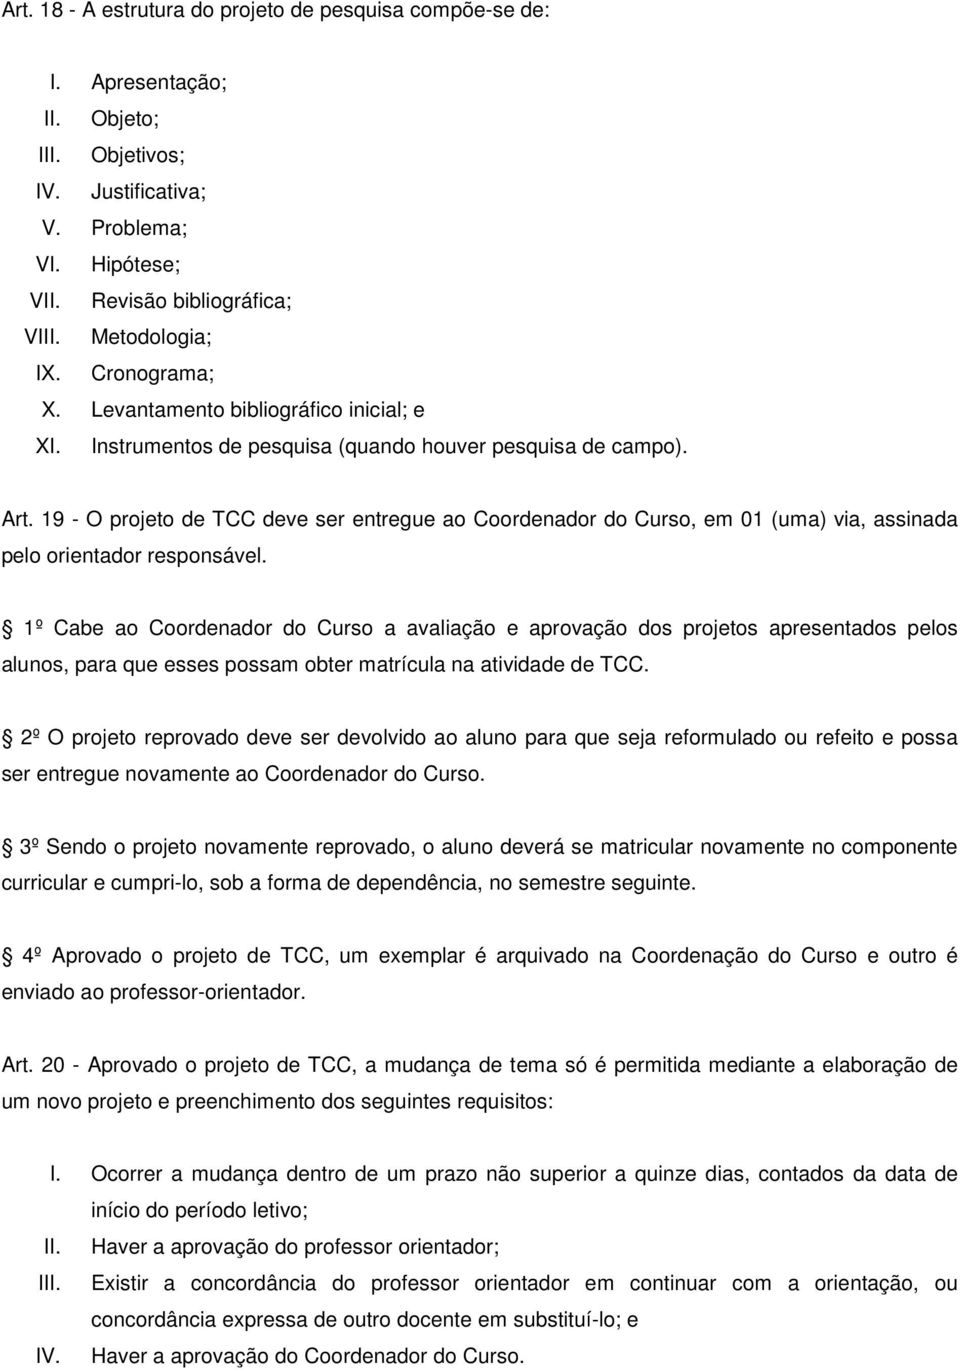 19 - O projeto de TCC deve ser entregue ao Coordenador do Curso, em 01 (uma) via, assinada pelo orientador responsável.